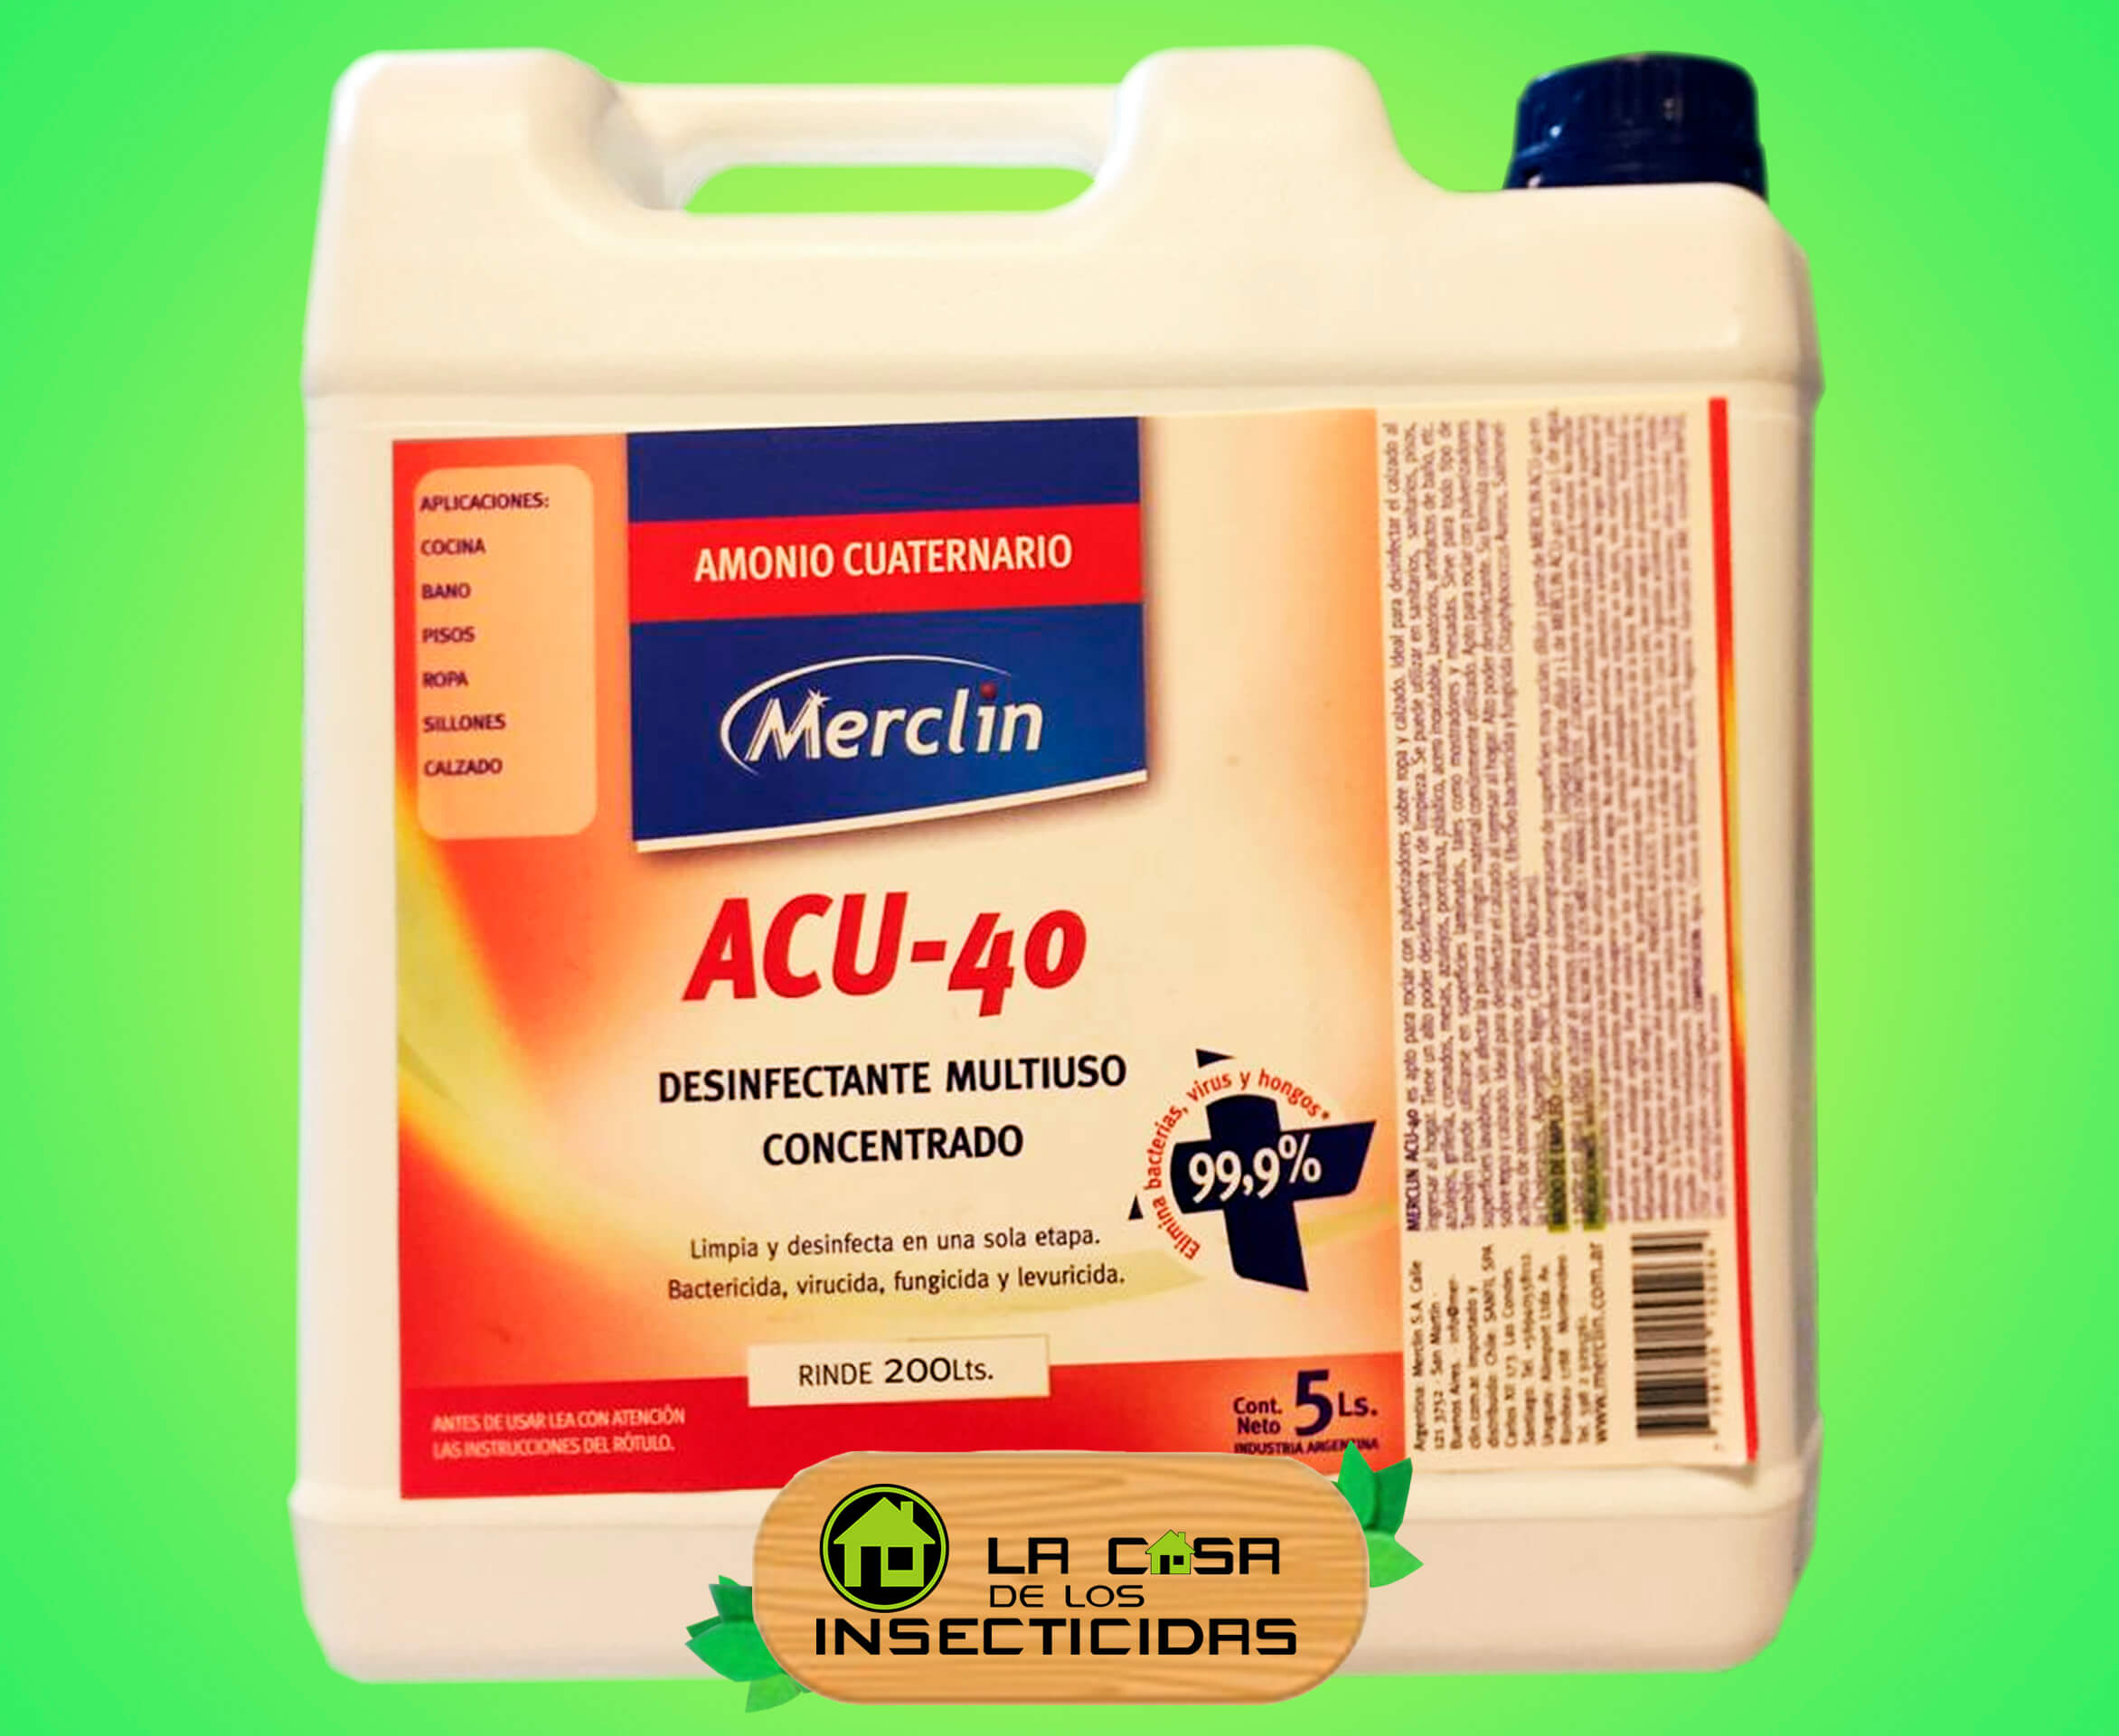 Desinfectante x 5 litros Amonio Cuaternario Merclin